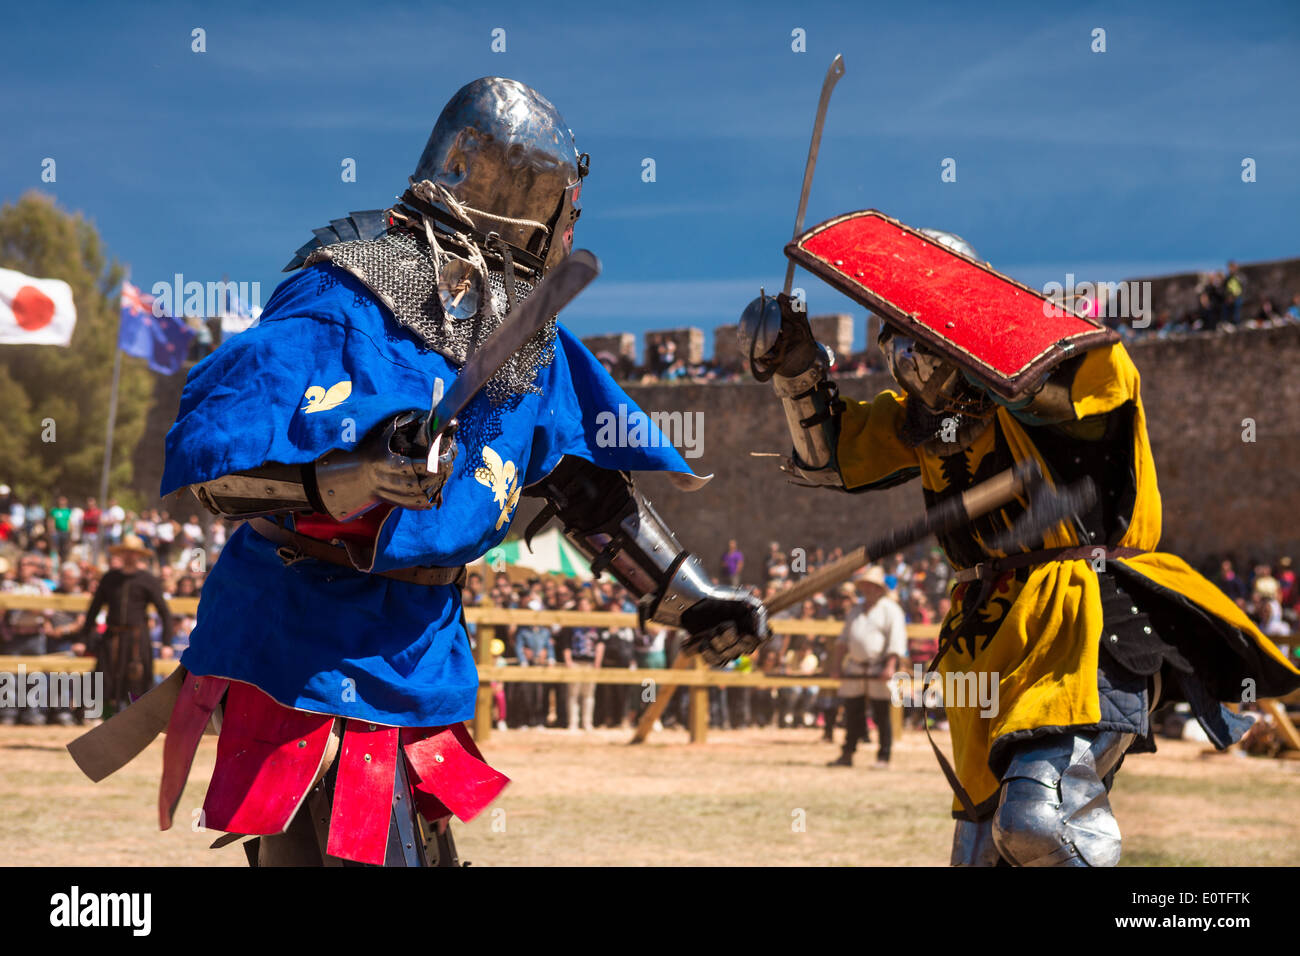 Combattenti medievale nel combattimento medievale nel Campionato del Mondo 2014 di Belmonte, Spagna. Francia vs Germania in 1vs1 Foto Stock